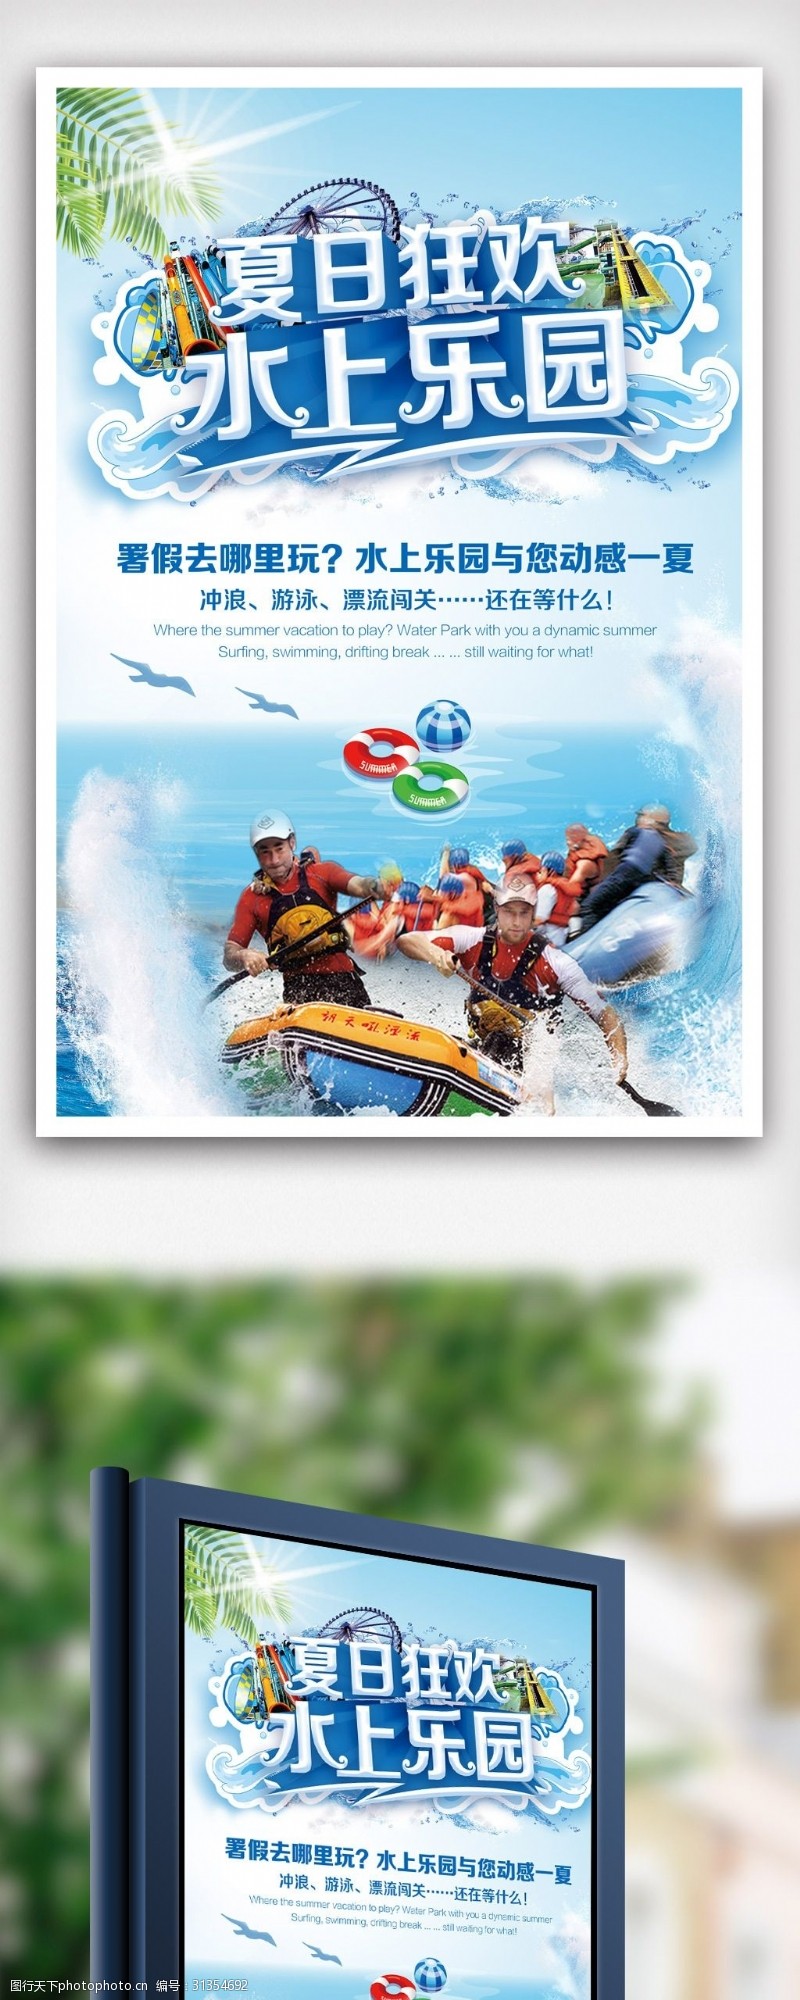 防溺水宣传水上乐园夏日狂欢旅游宣传海报.psd